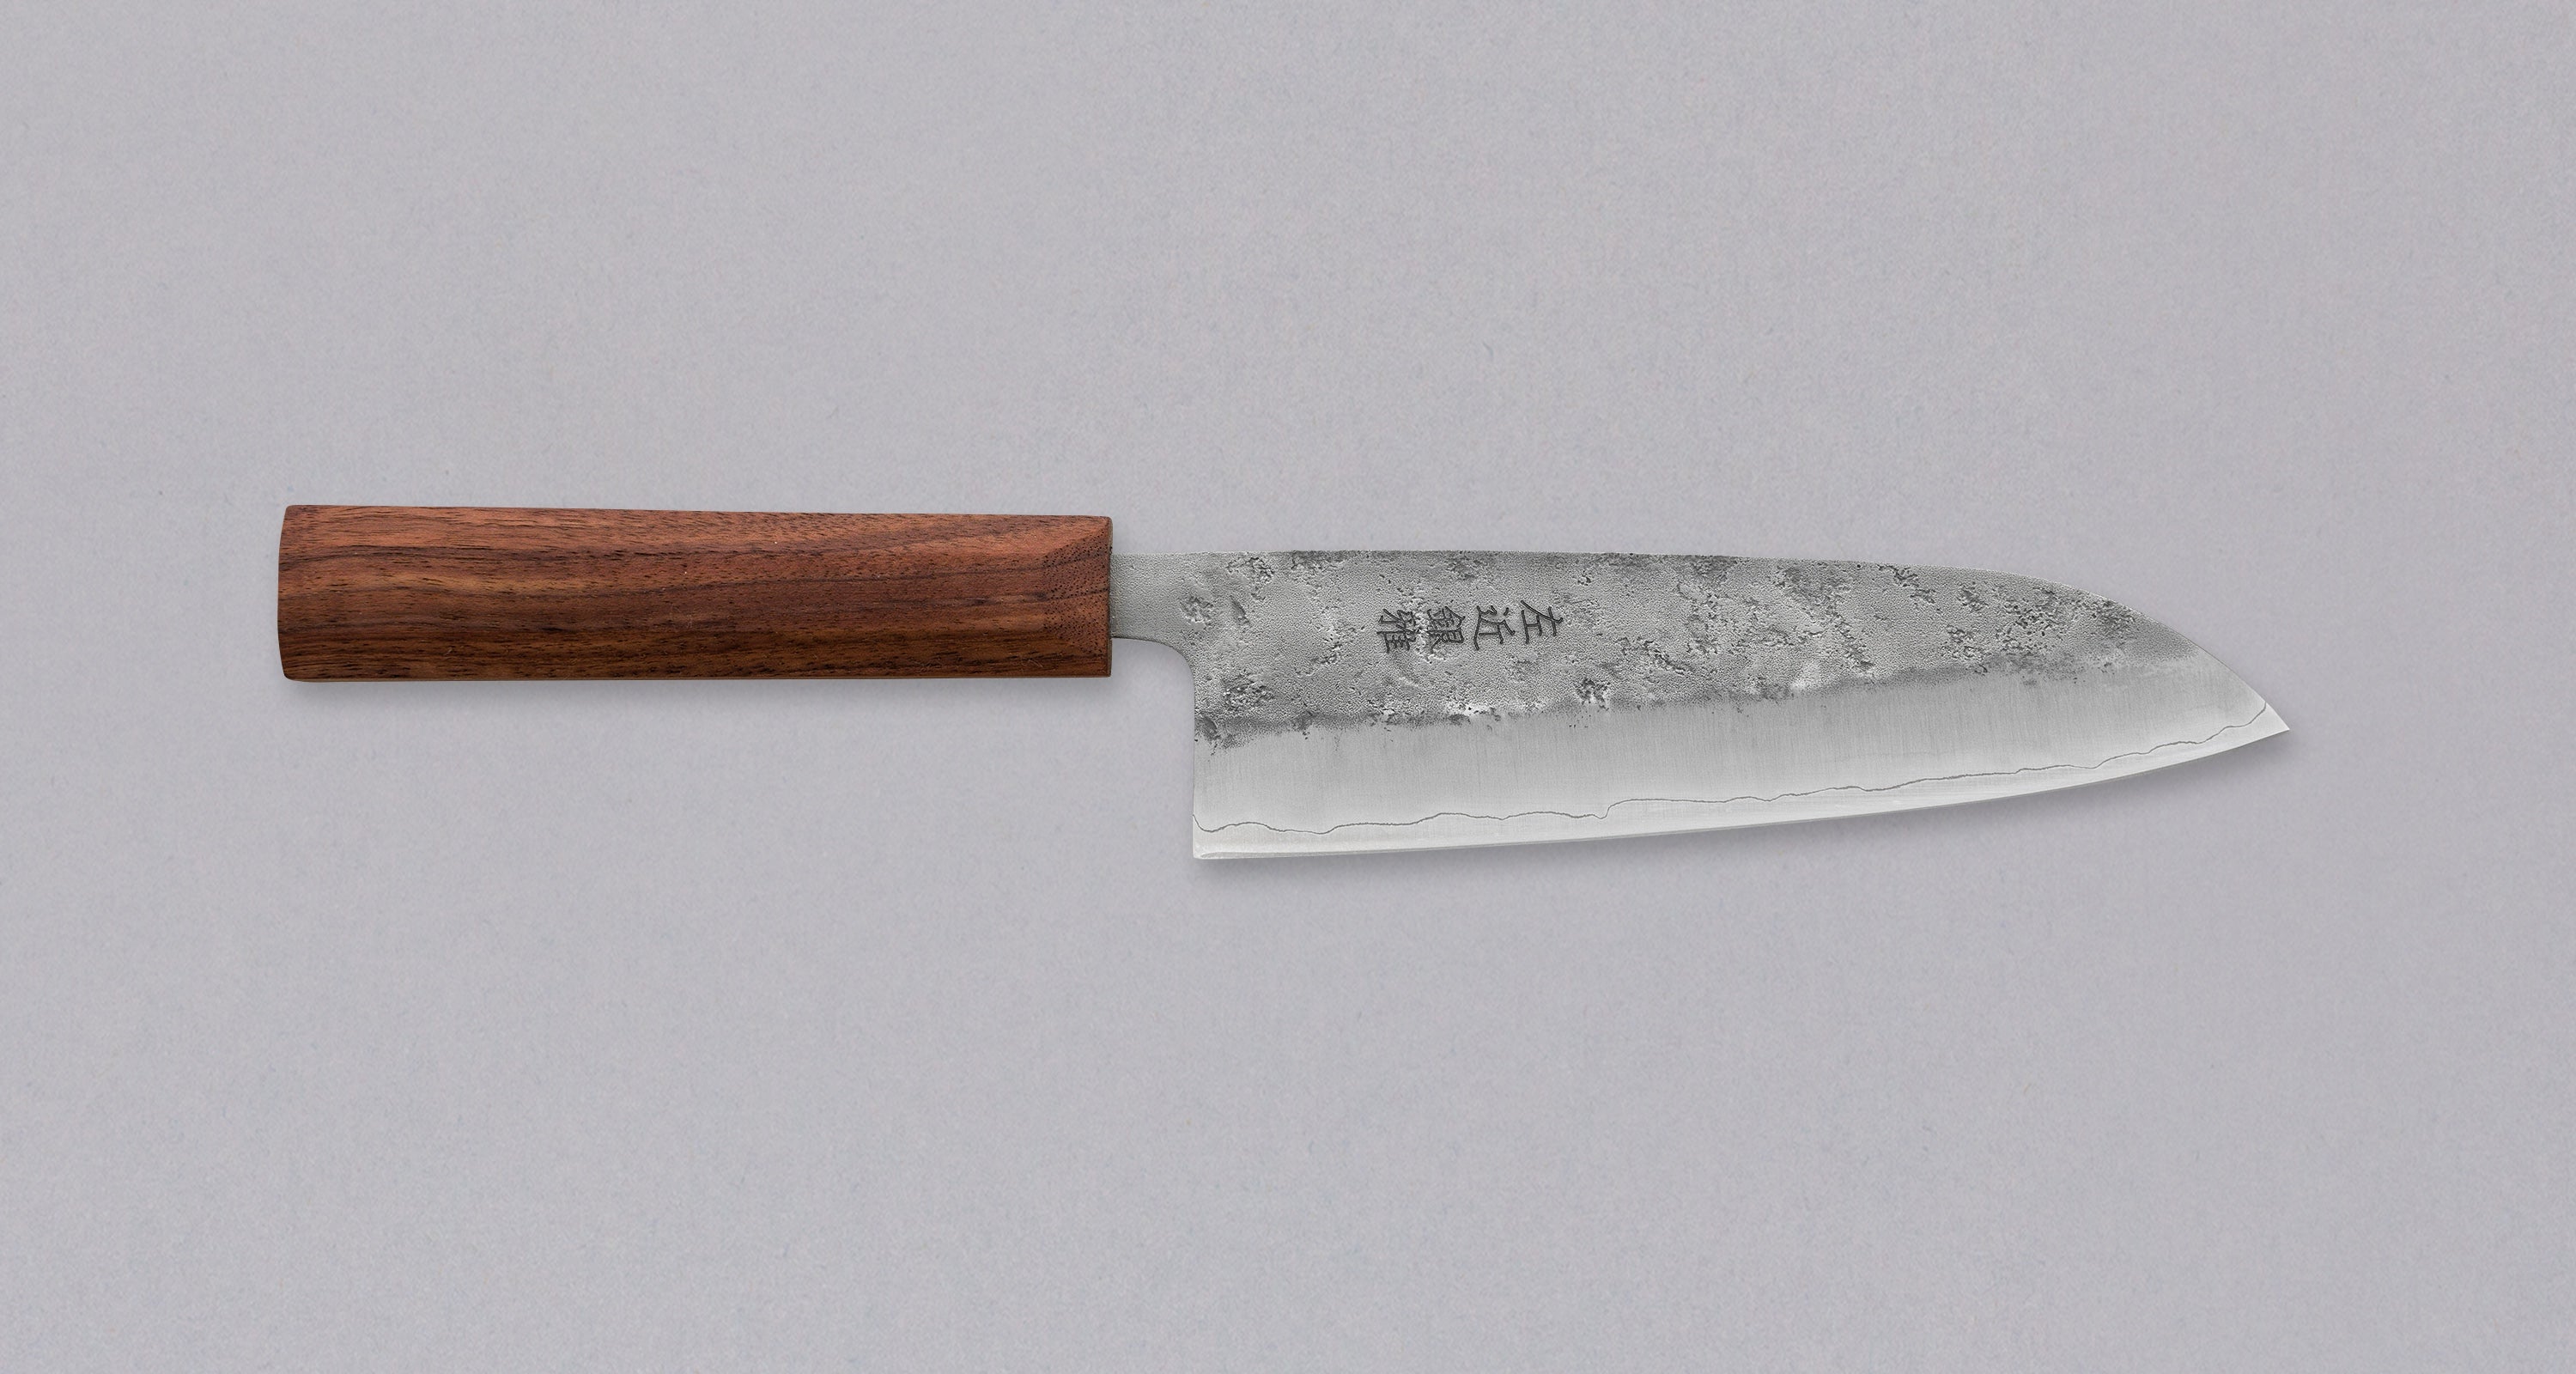 Miyabi Mikoto Chef's Knife